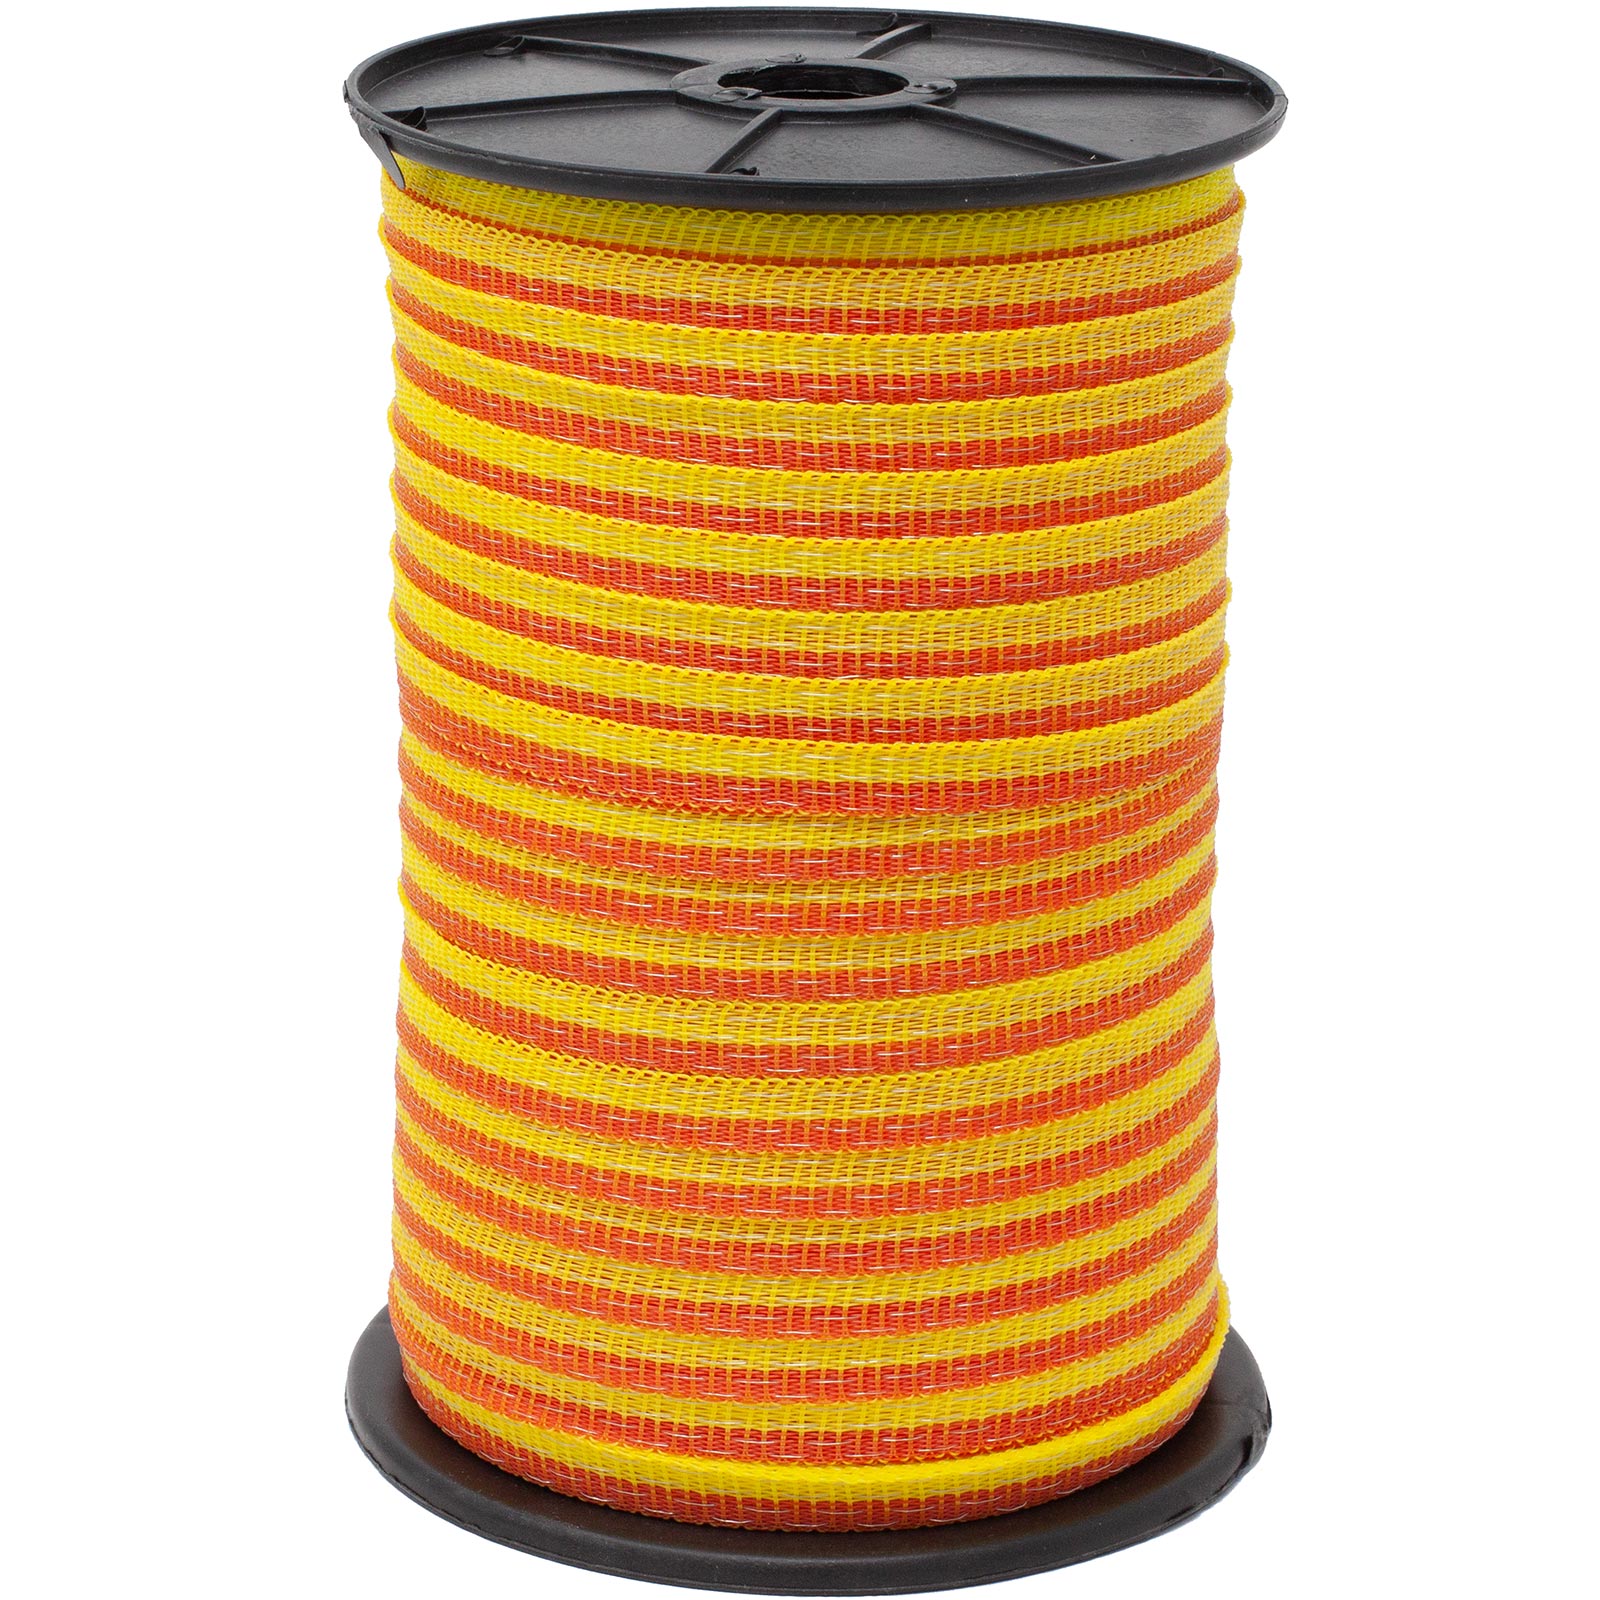 Agrarzone Nastro per recinto elettrico BASIC 10 mm, 4x0,16 acciaio inox, giallo-arancio 250 m x 10 mm